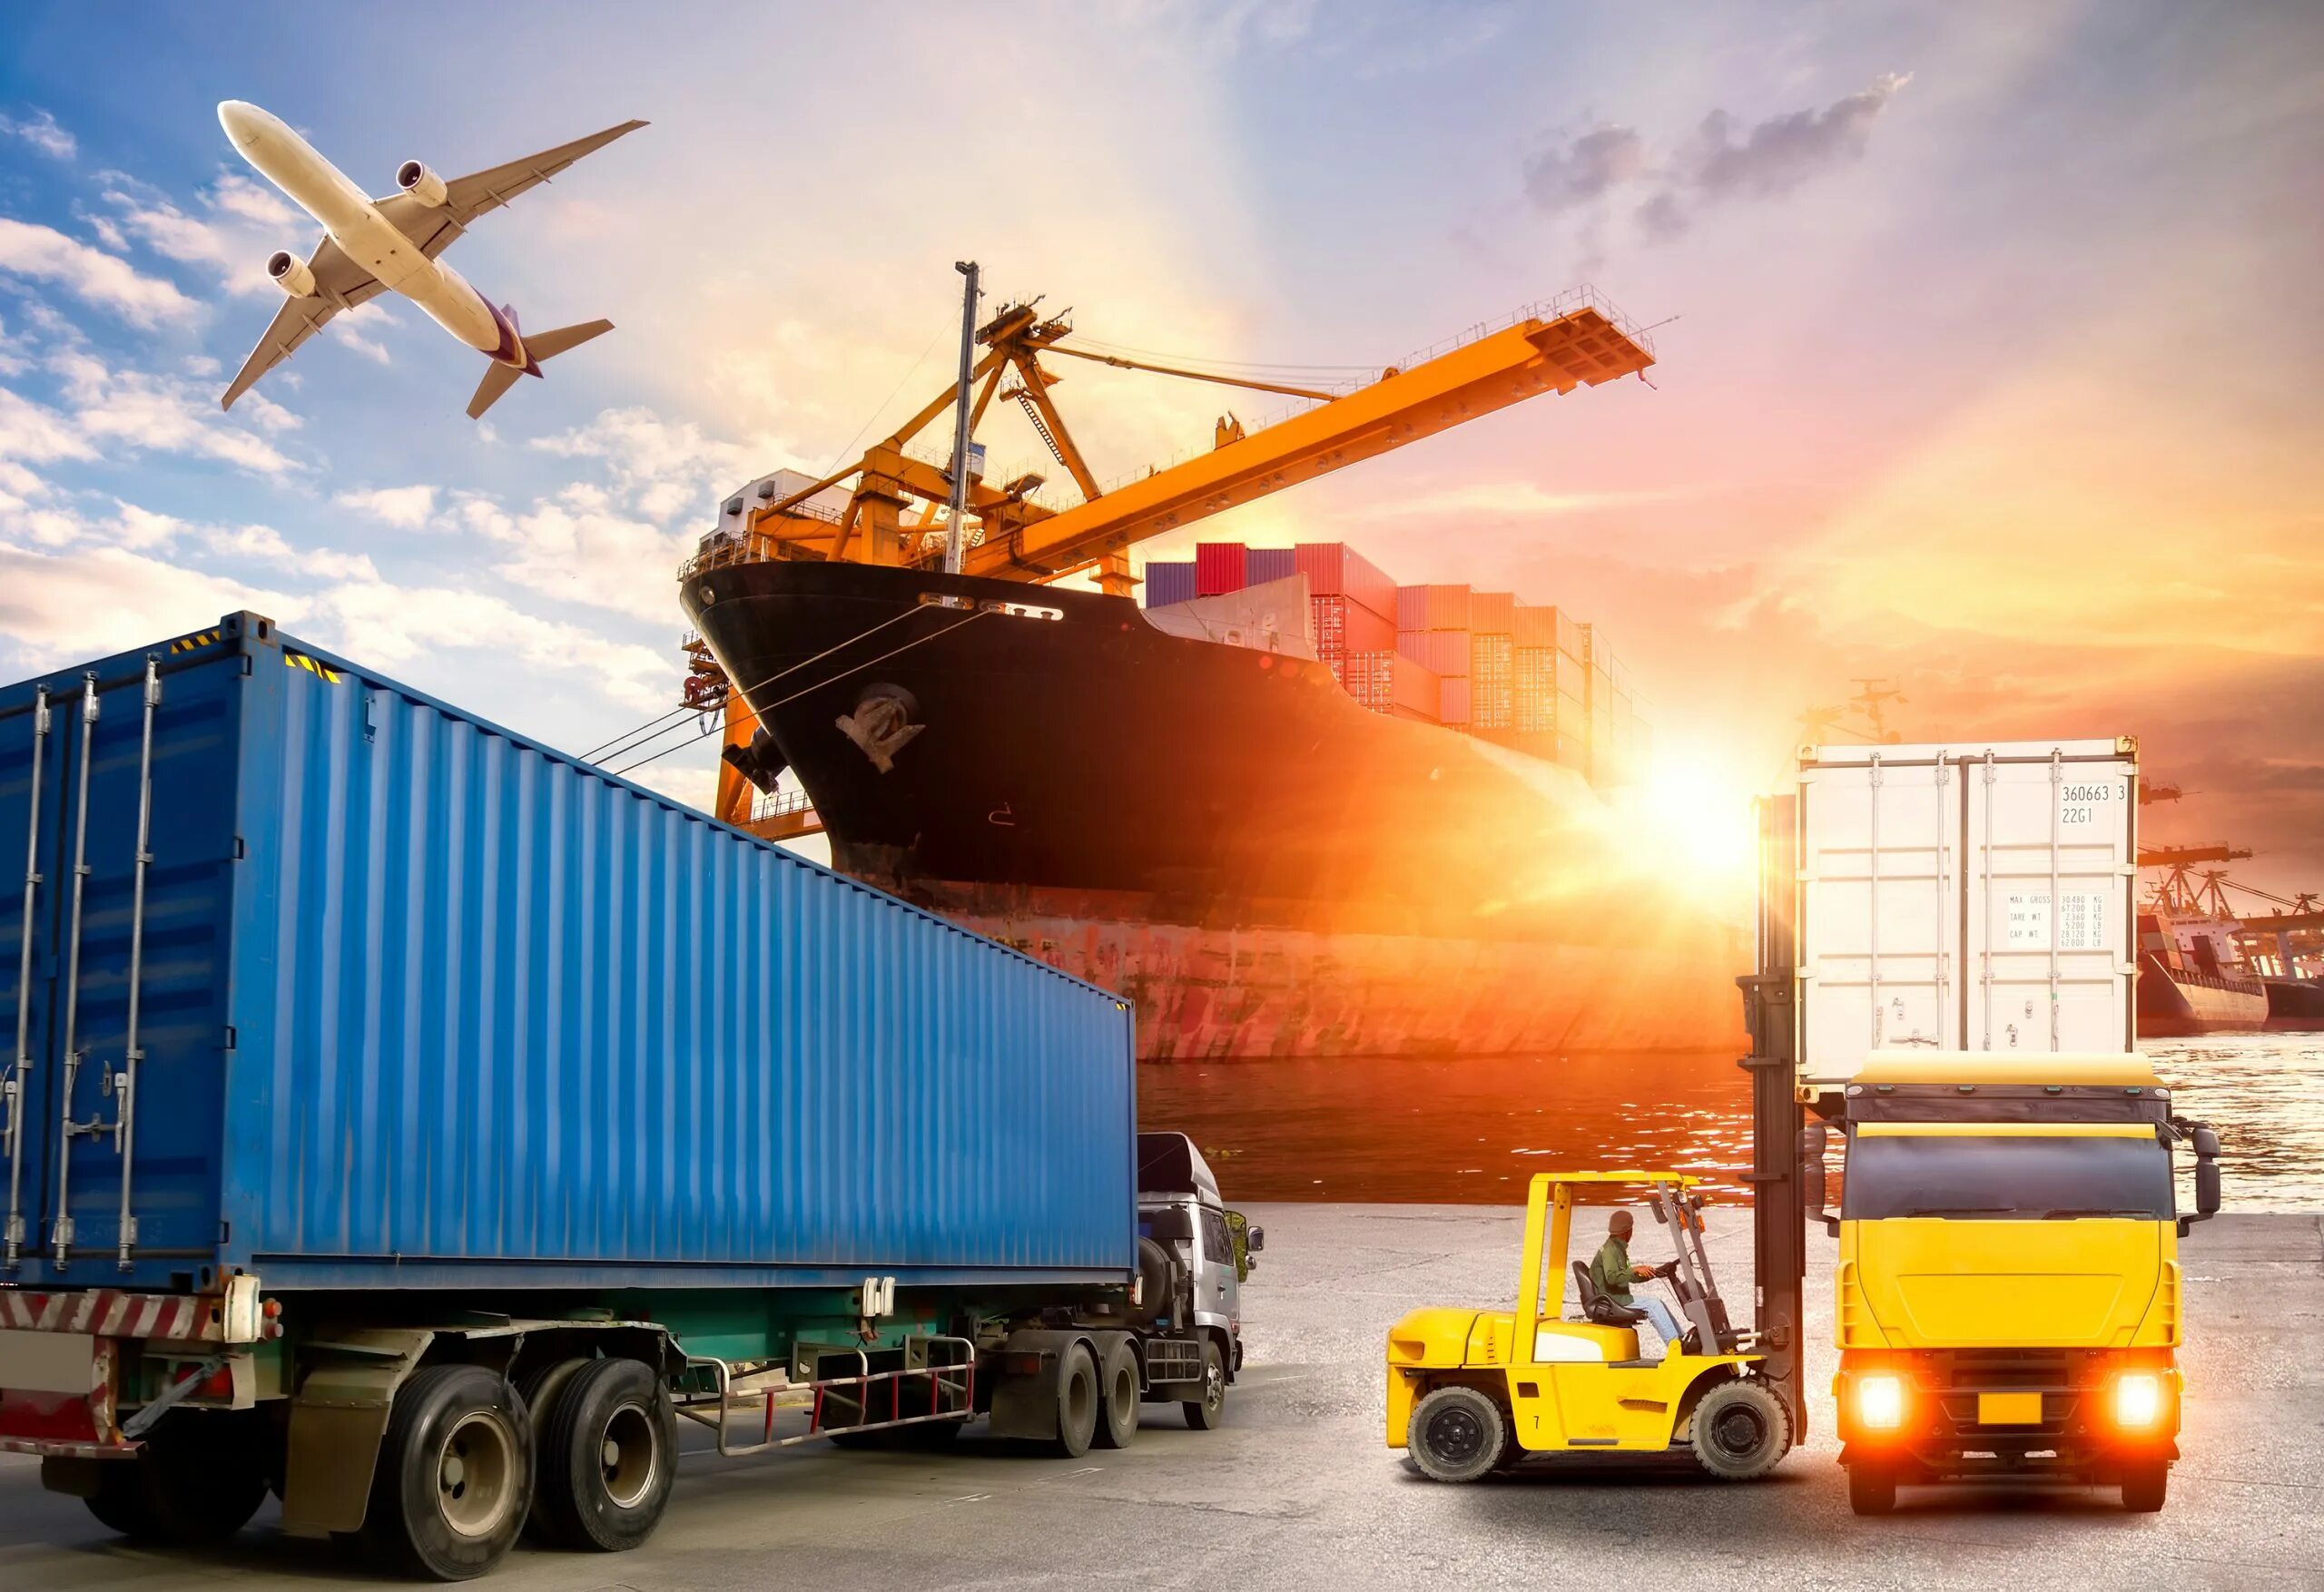 Ооо груз транспорт. Транспортная компания Cargo transport Logistics. Мультимодальные перевозки. Контейнерные перевозки. Промышленный транспорт.